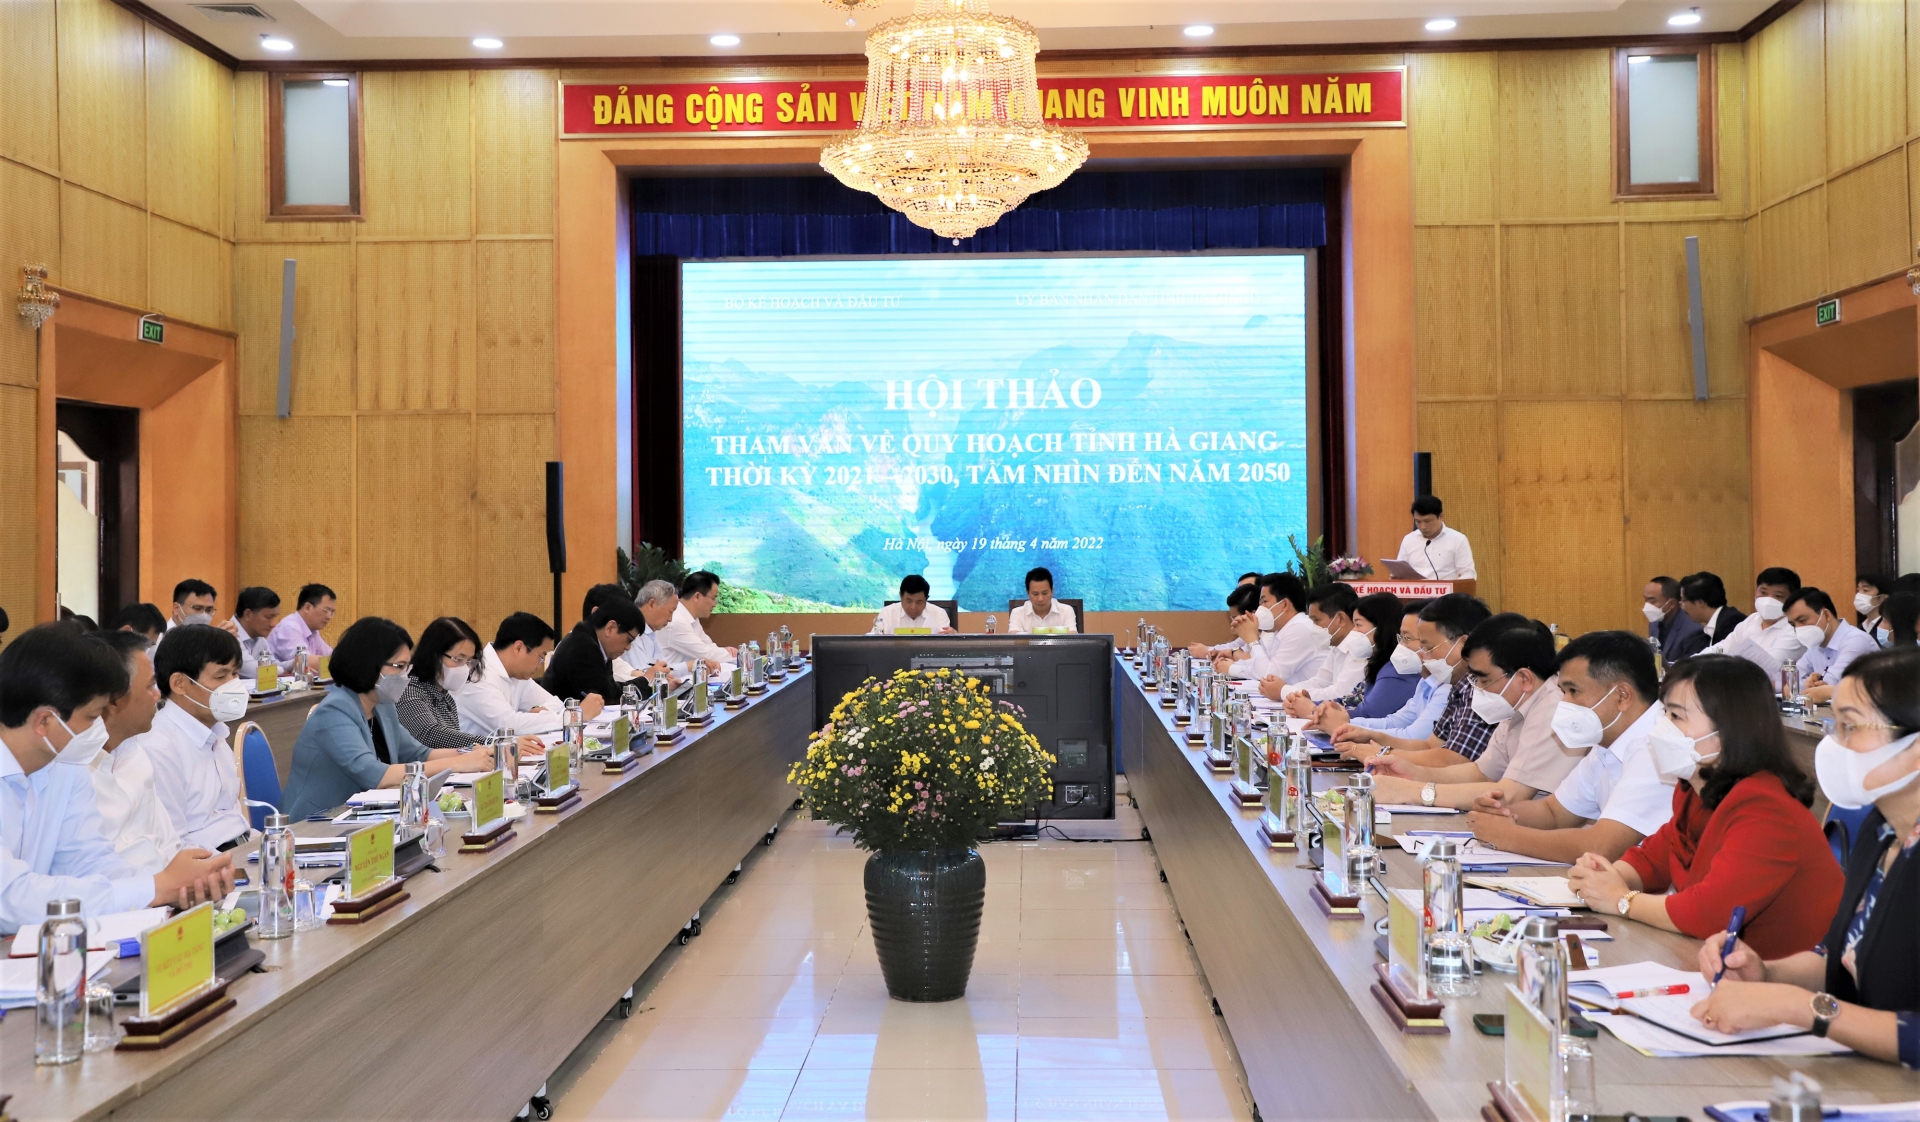 Toàn cảnh Hội thảo tham vấn về quy hoạch tỉnh Hà Giang.